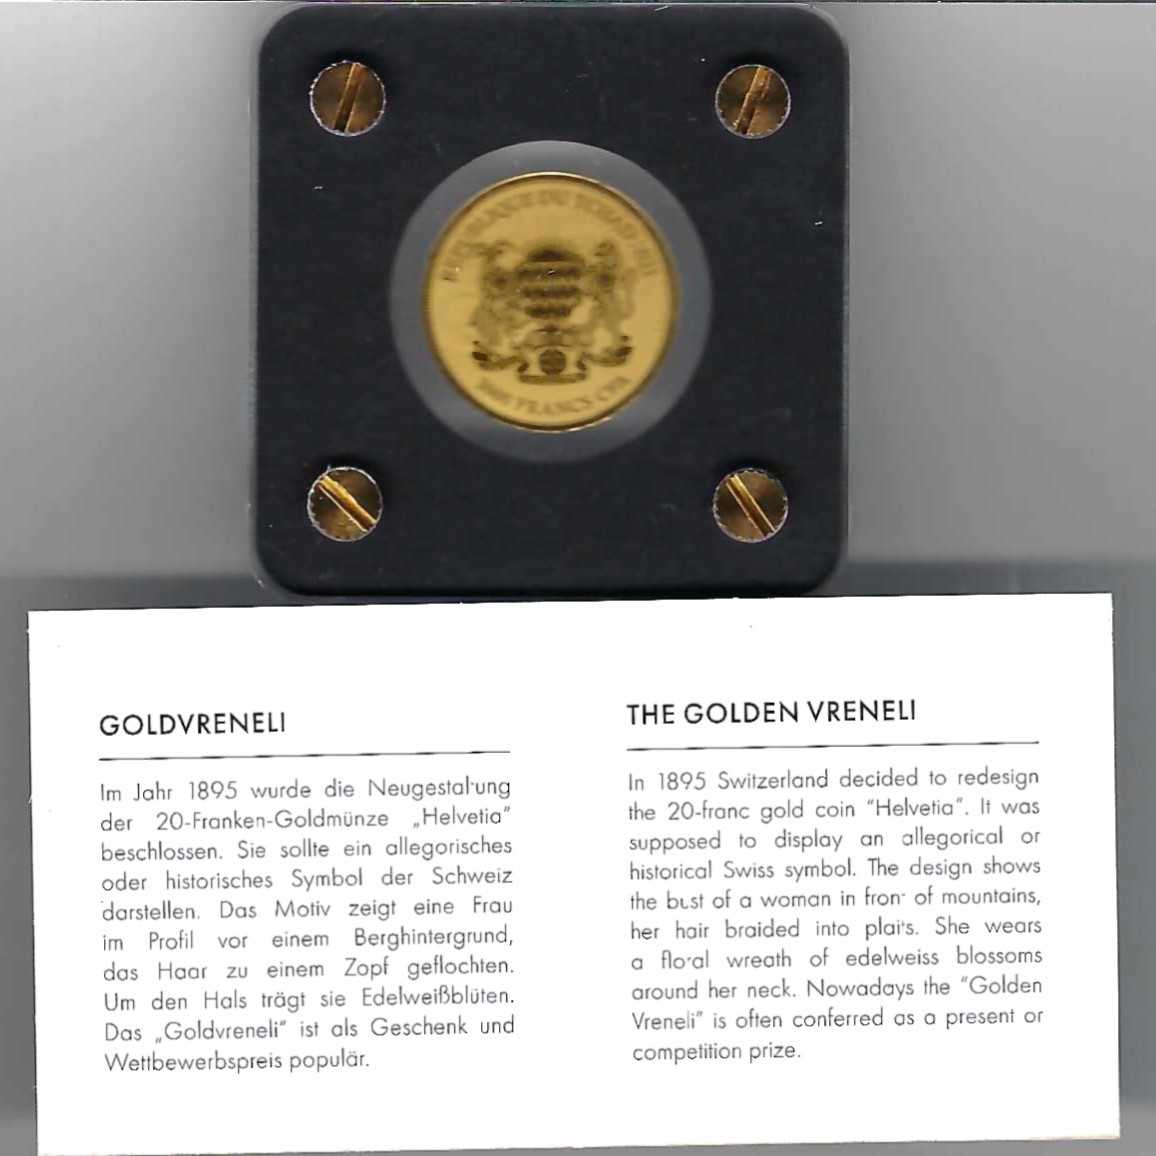  Goldbarren Tschad 3000 Francs 2021 Feingold 999 1/500 oz Golden Gate Koblenz Frank Maurer AB 739   